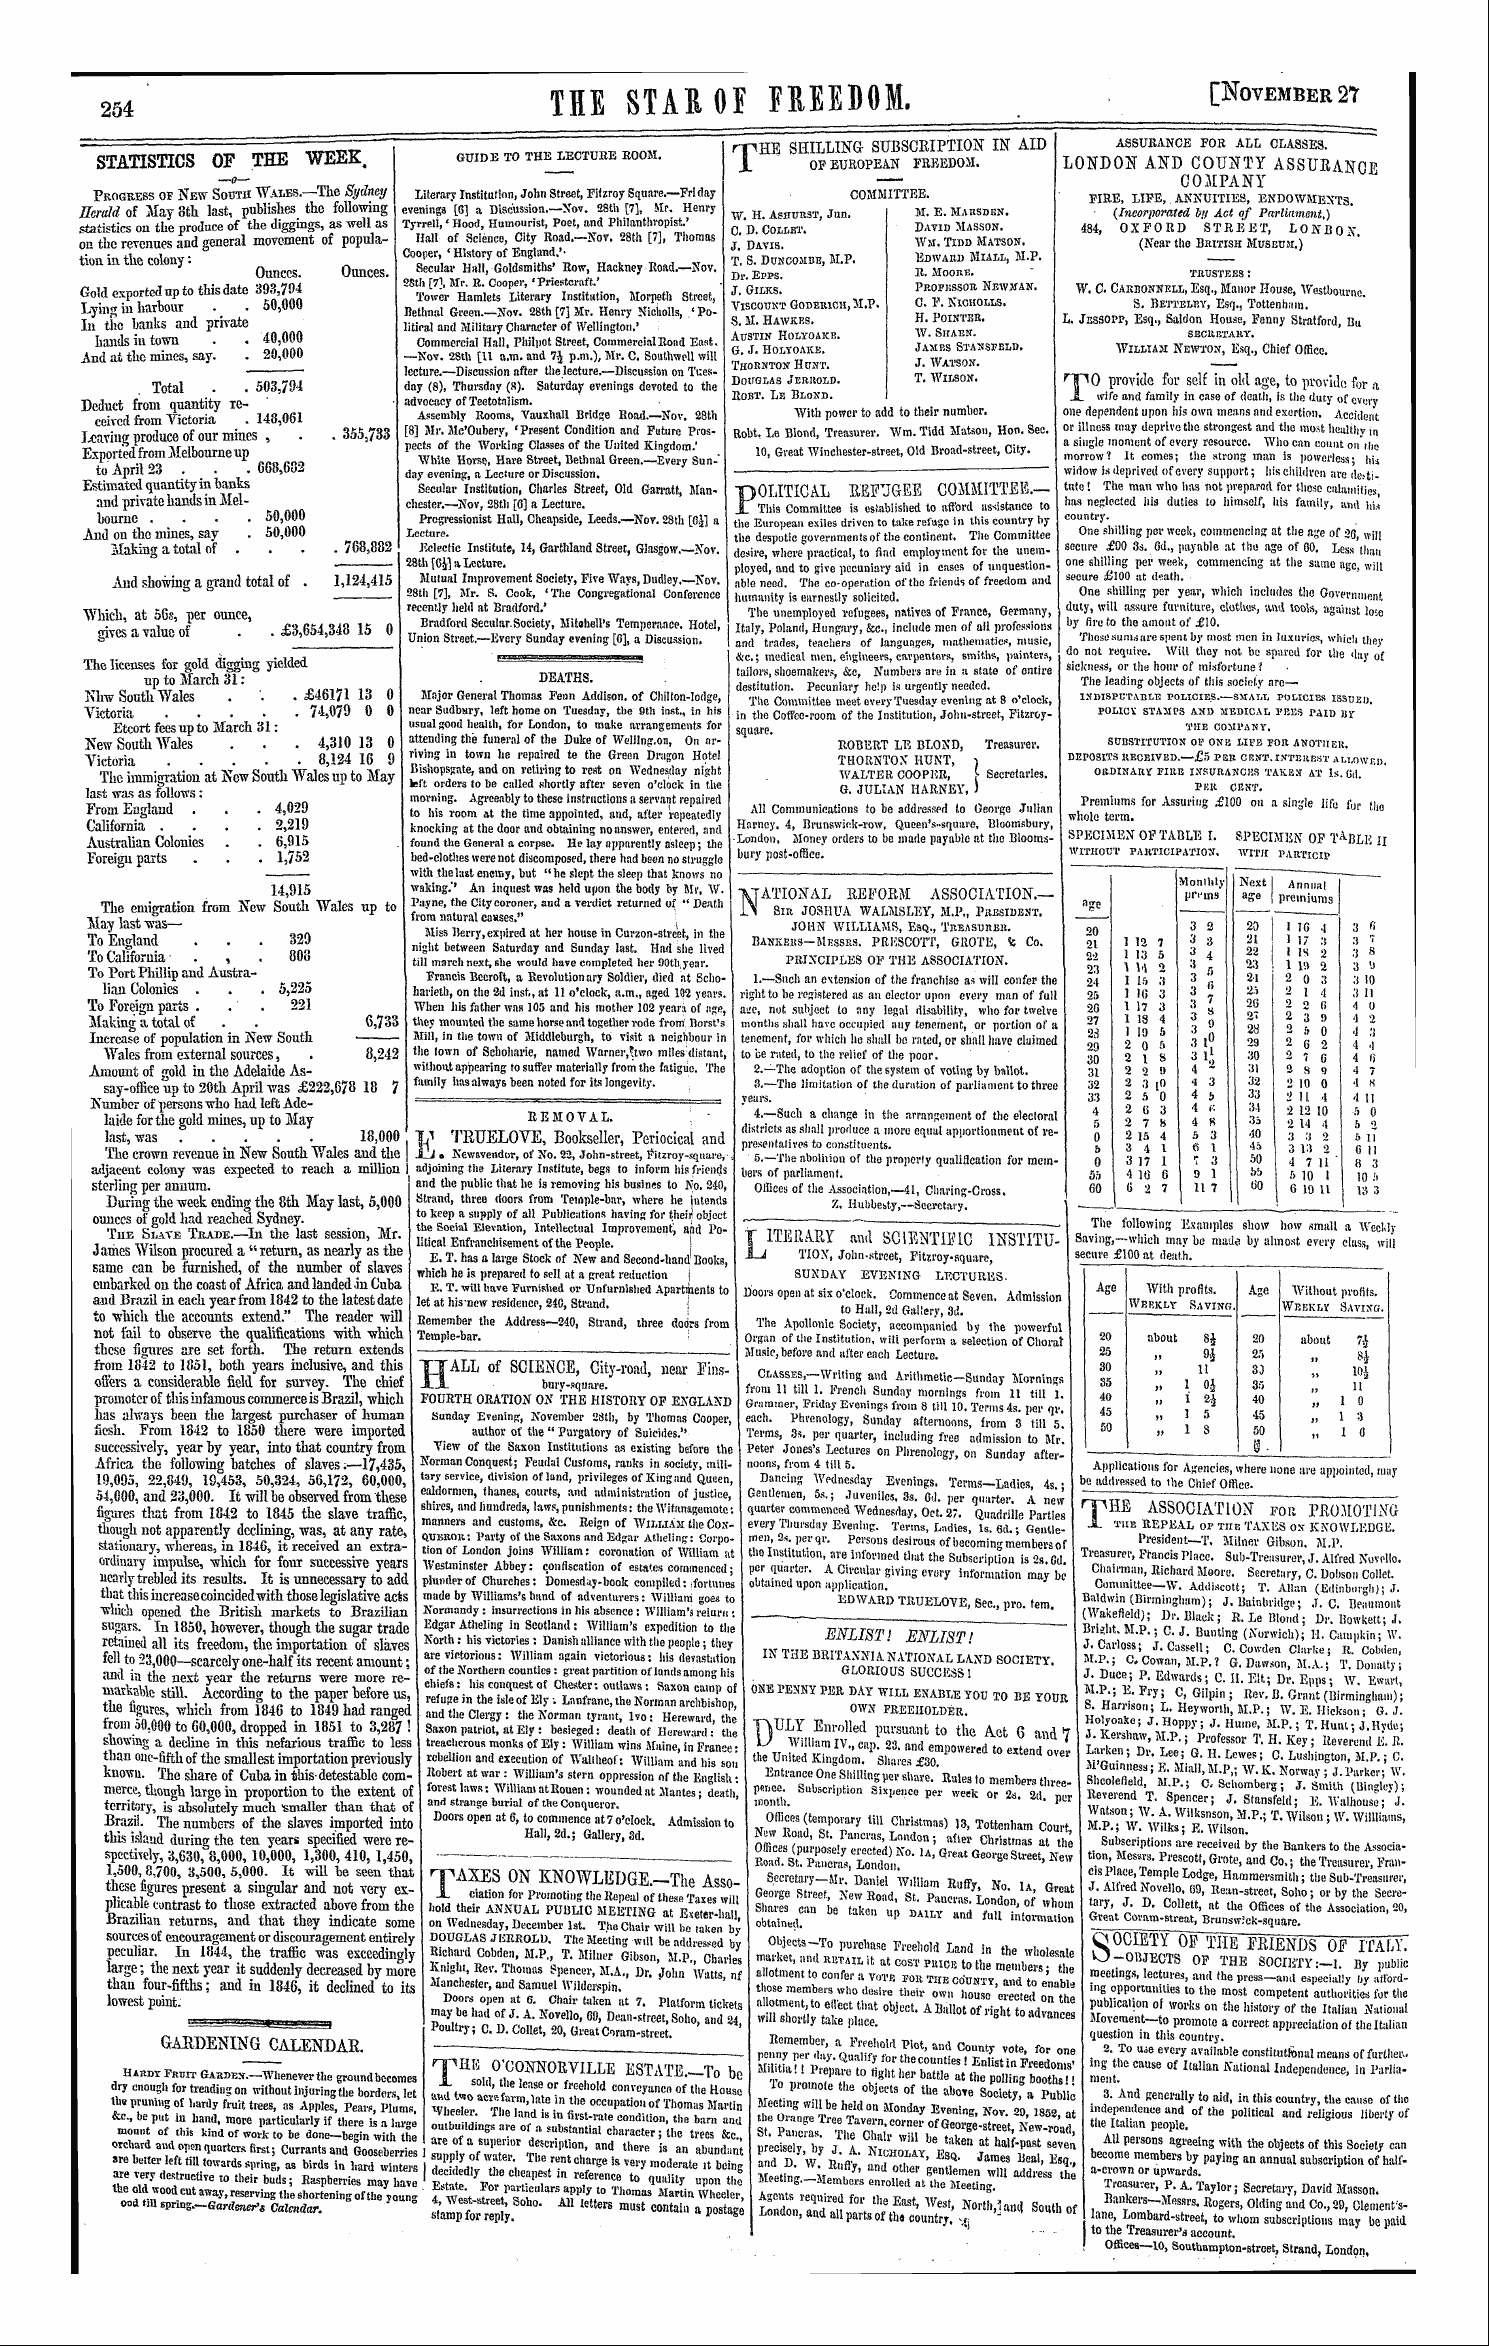 Northern Star (1837-1852): jS F Y, 1st edition - Ar01204